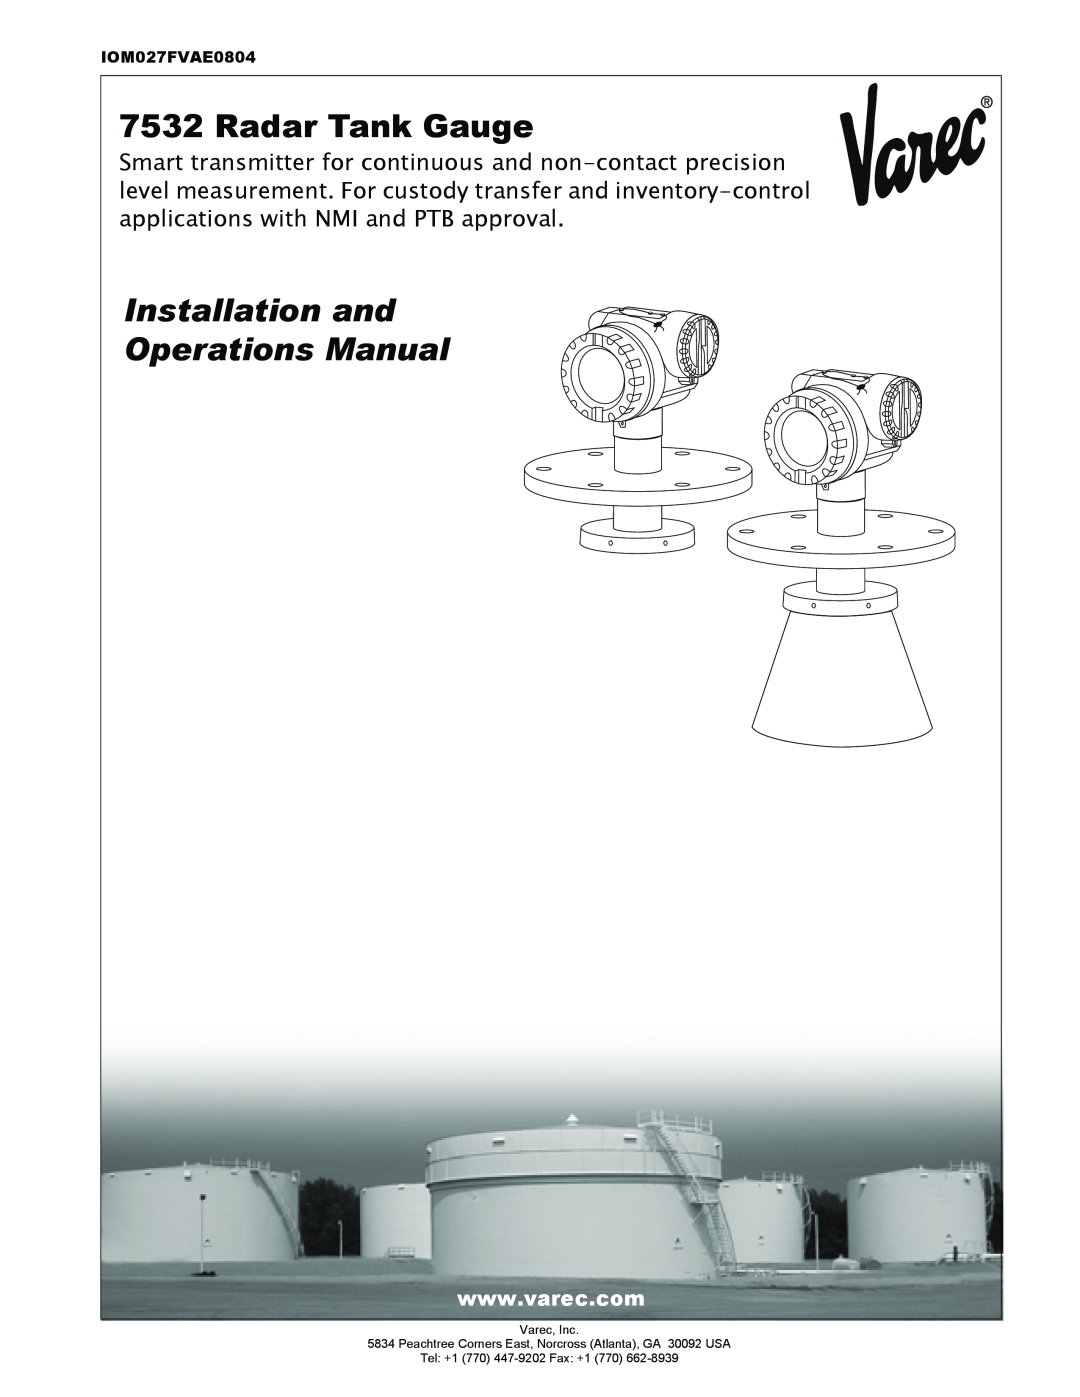 Lightning Audio 7532 manual Radar Tank Gauge, Installation and Operations Manual, IOM027FVAE0804, Varec, Inc 